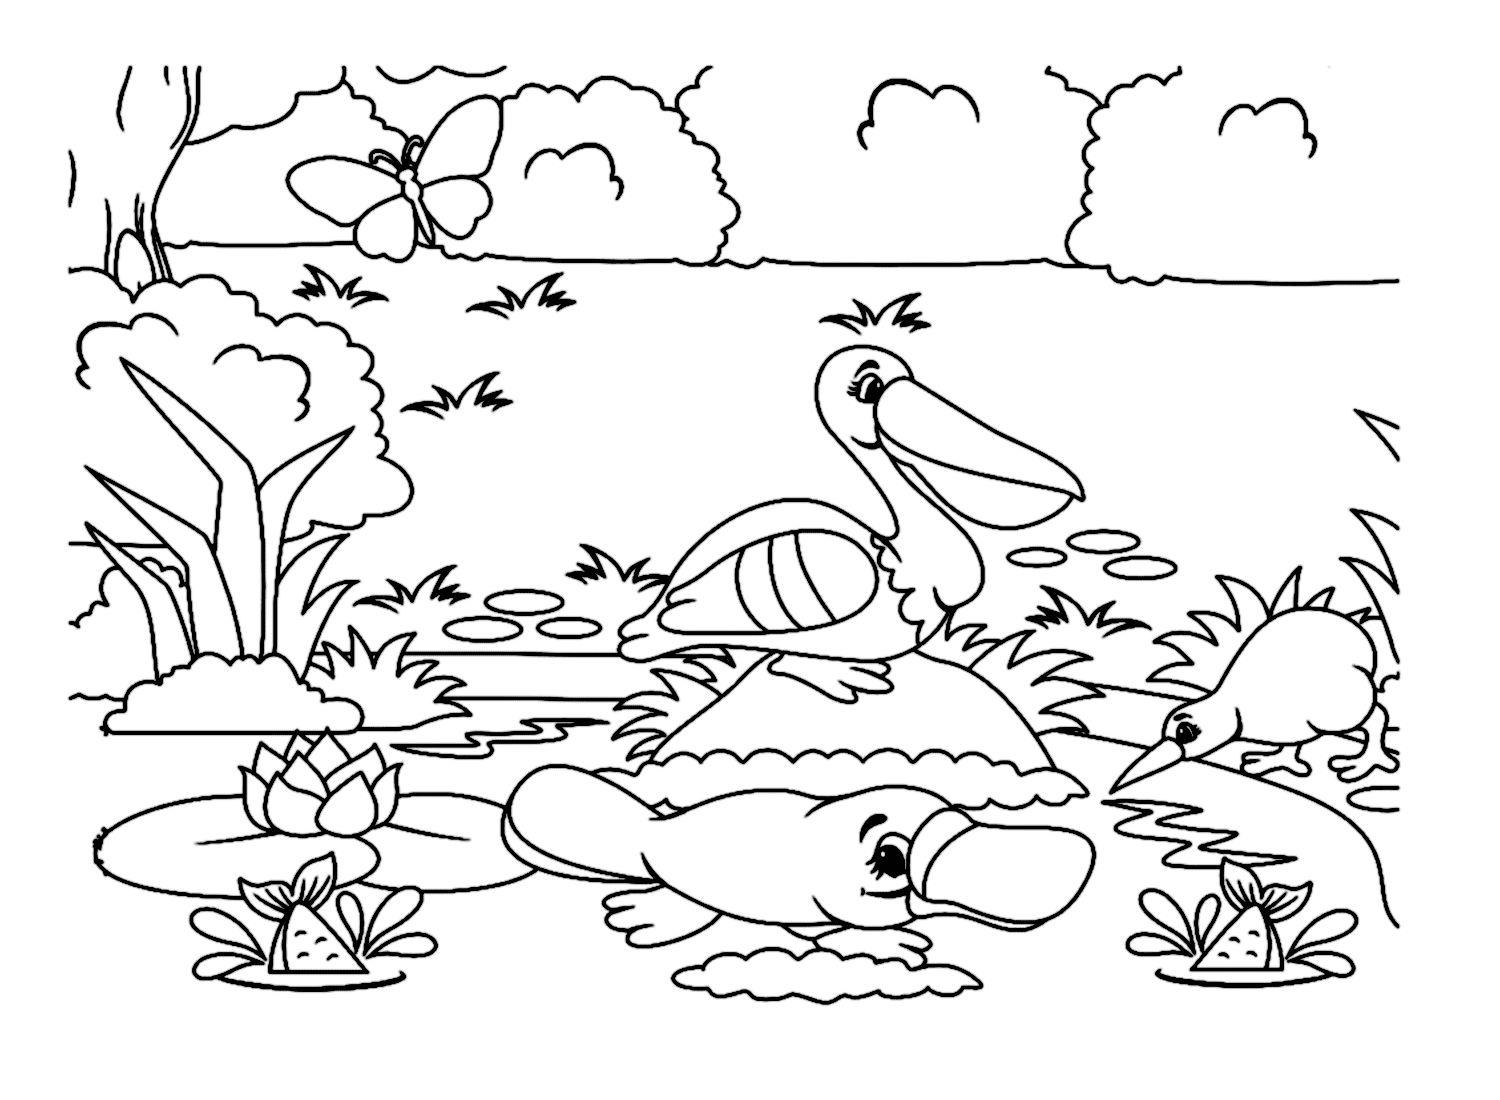 Ornitorinco sulla riva del fiume con altri animali di Platypus